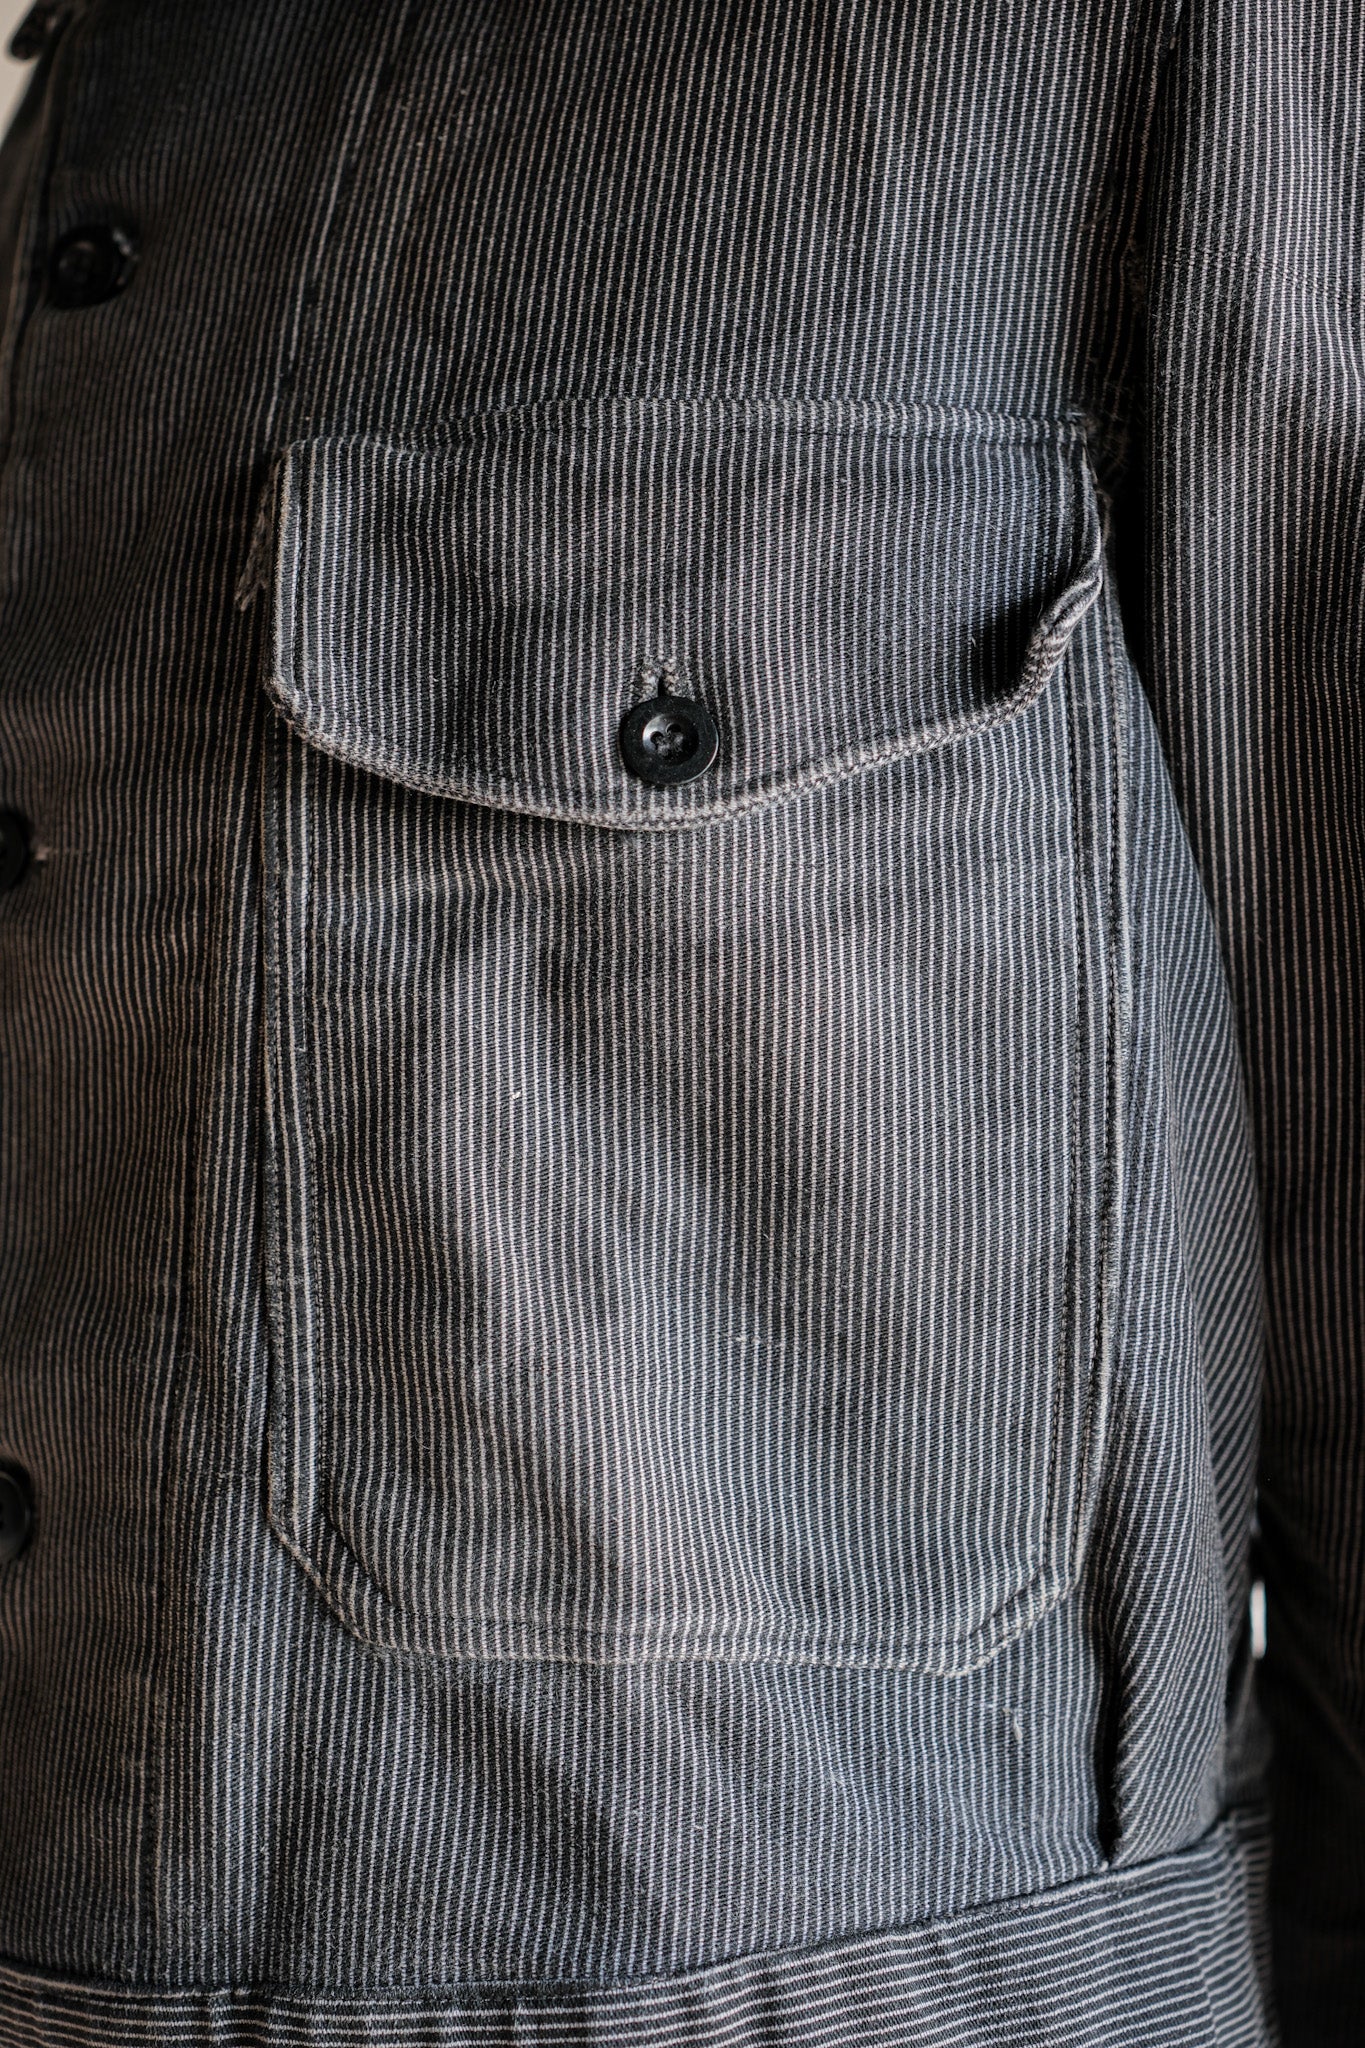 【~40's】Belgium Vintage Printed Moleskin Prisoner Jacket